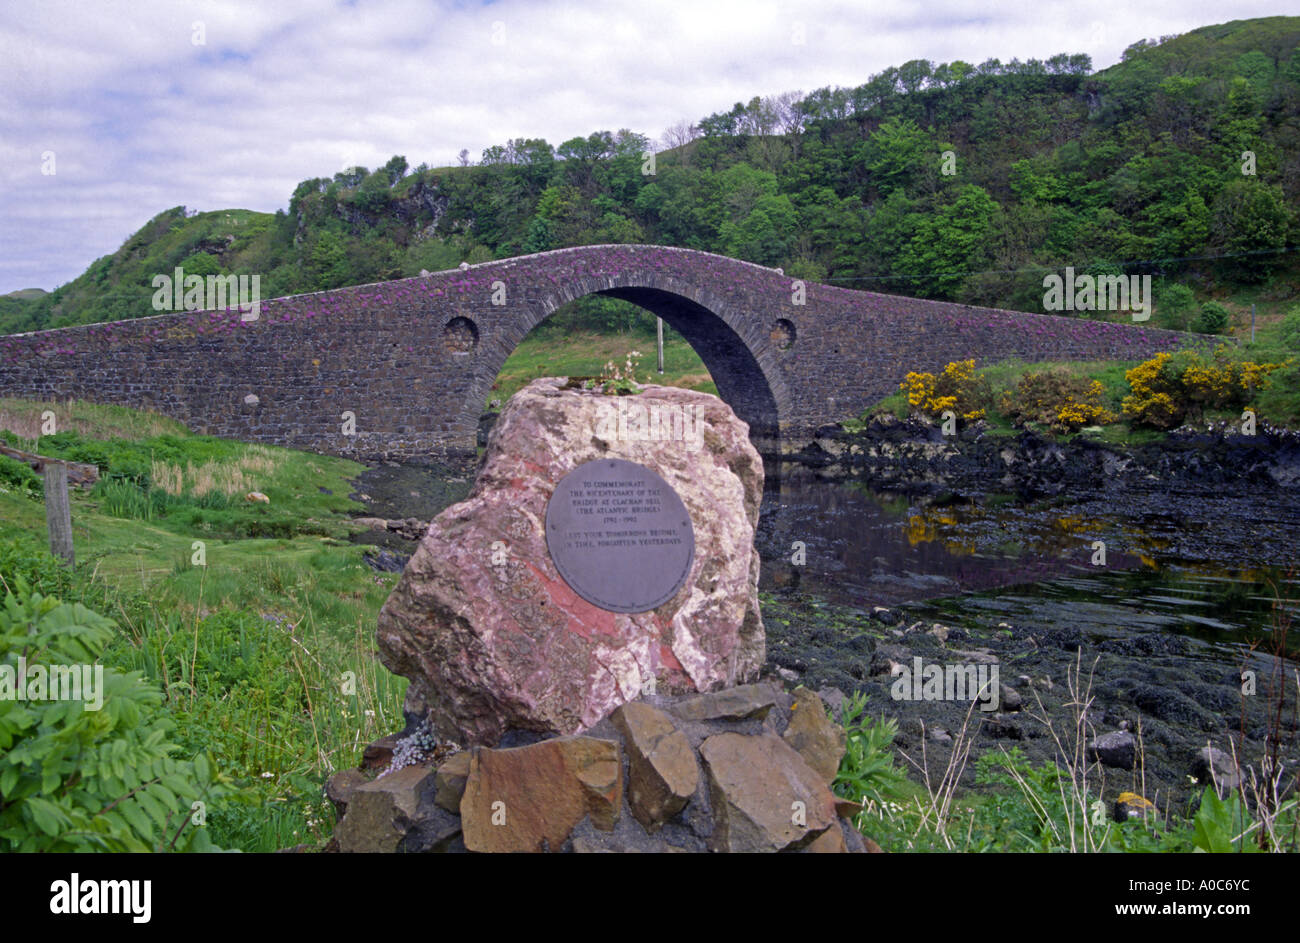 Monumento de piedra en el puente que une el Clachan continental Escocés en la isla de Seil al sur de Oban. Foto de stock